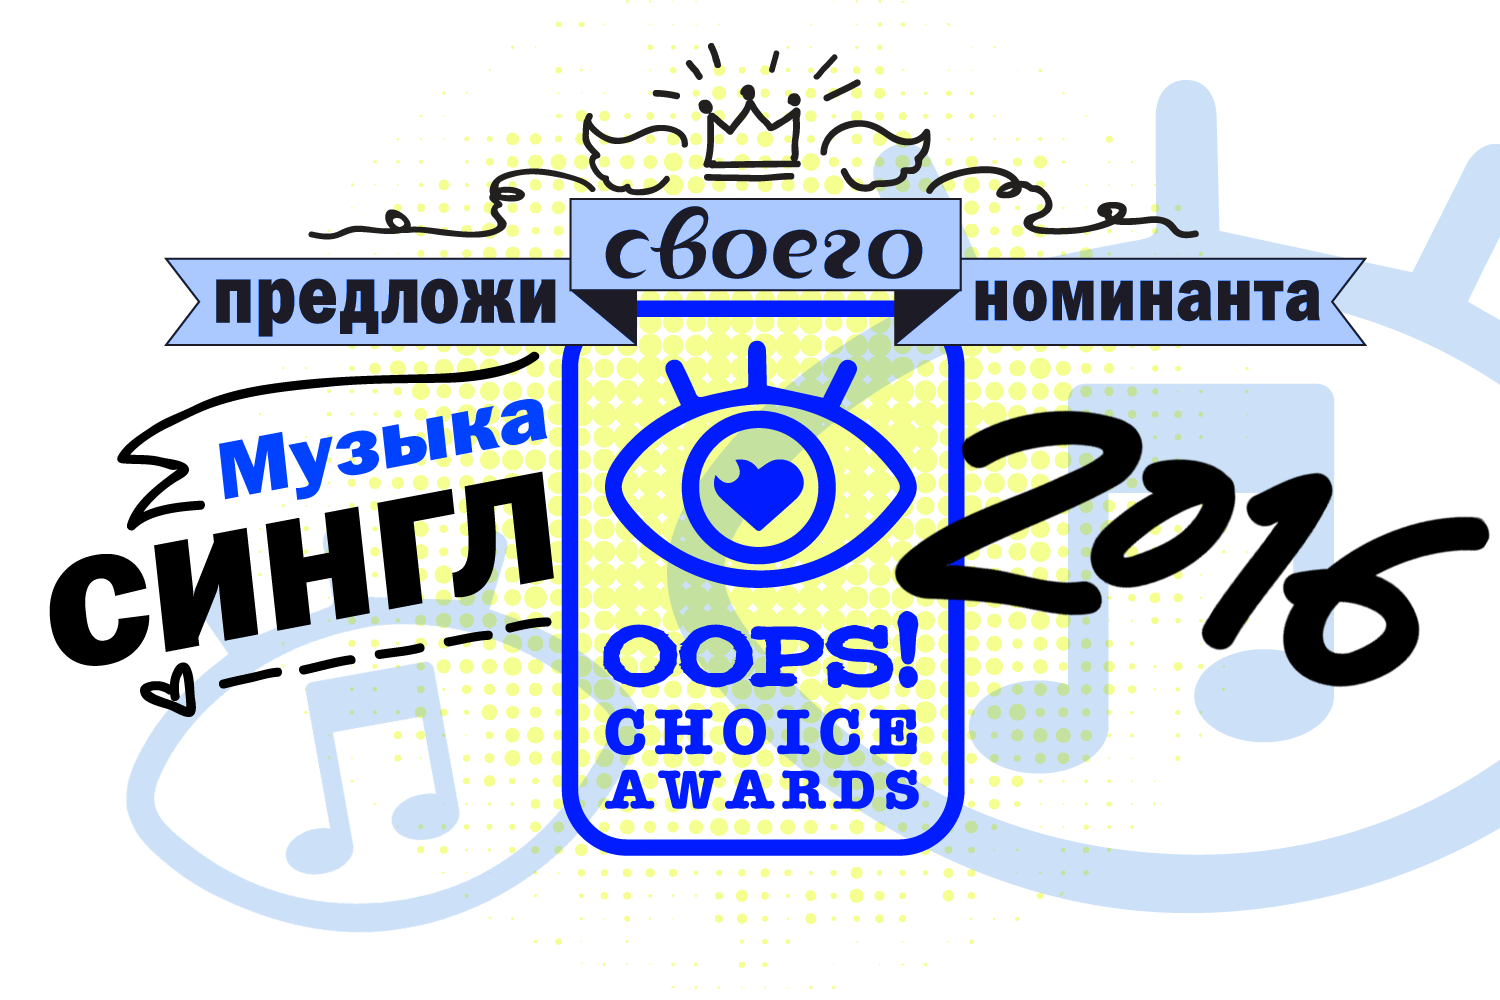  OOPS! Choice Awards: лучшие синглы этого года